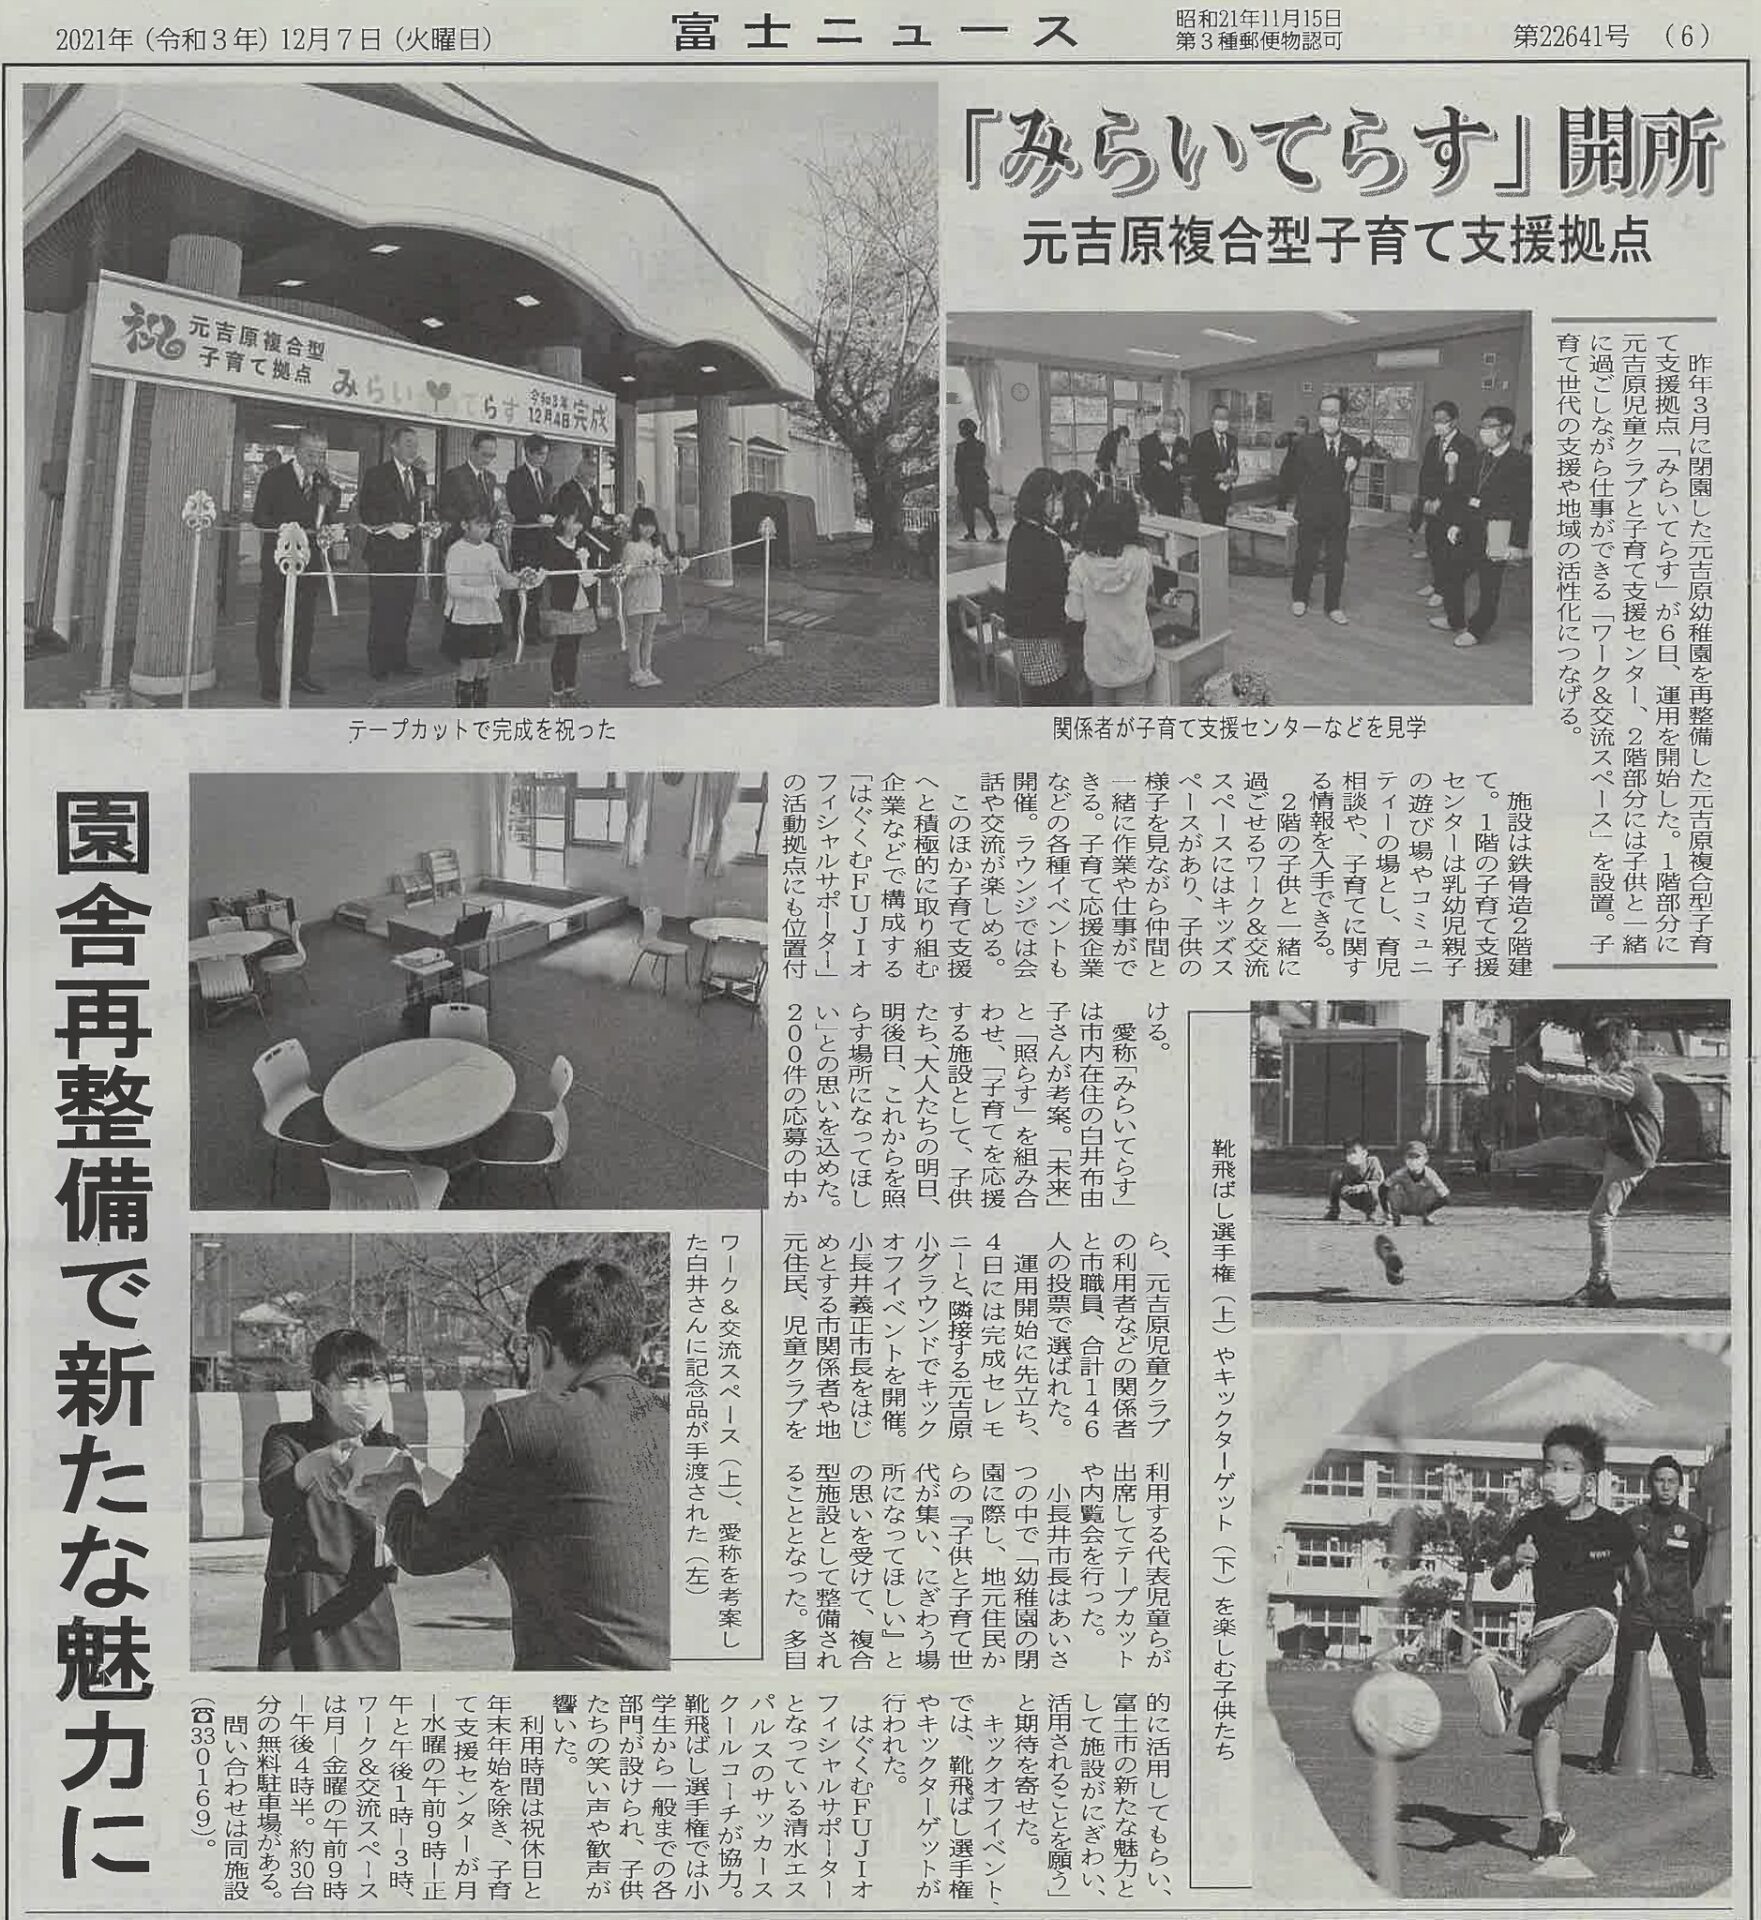 メディア掲載情報「みらいてらす」についての記事が、12月7日付静岡新聞と富士ニュースに掲載されました。